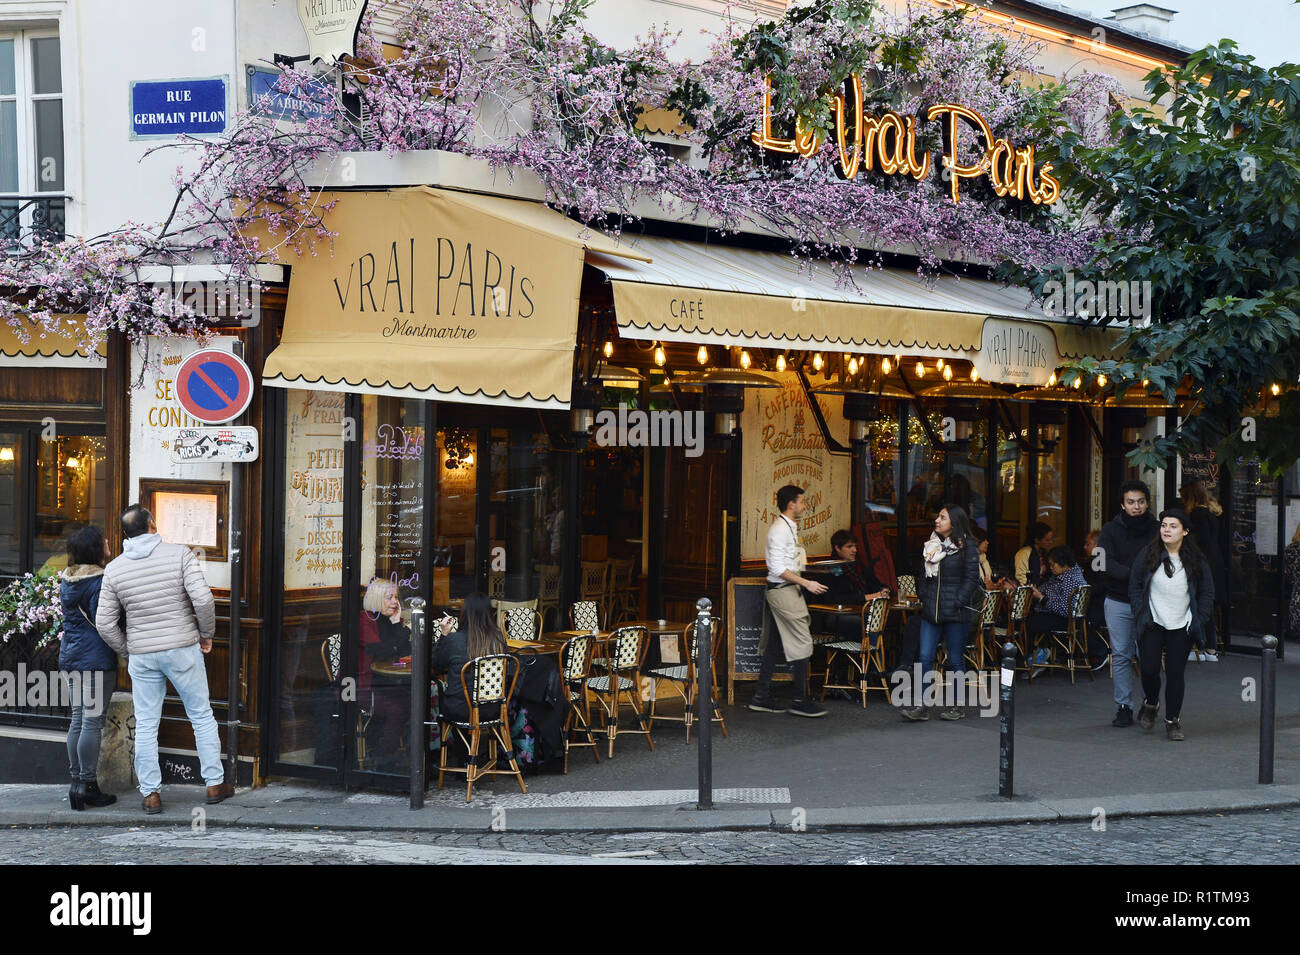 Le Vrai Paris Café - Montmartre - Paris - France Stock Photo